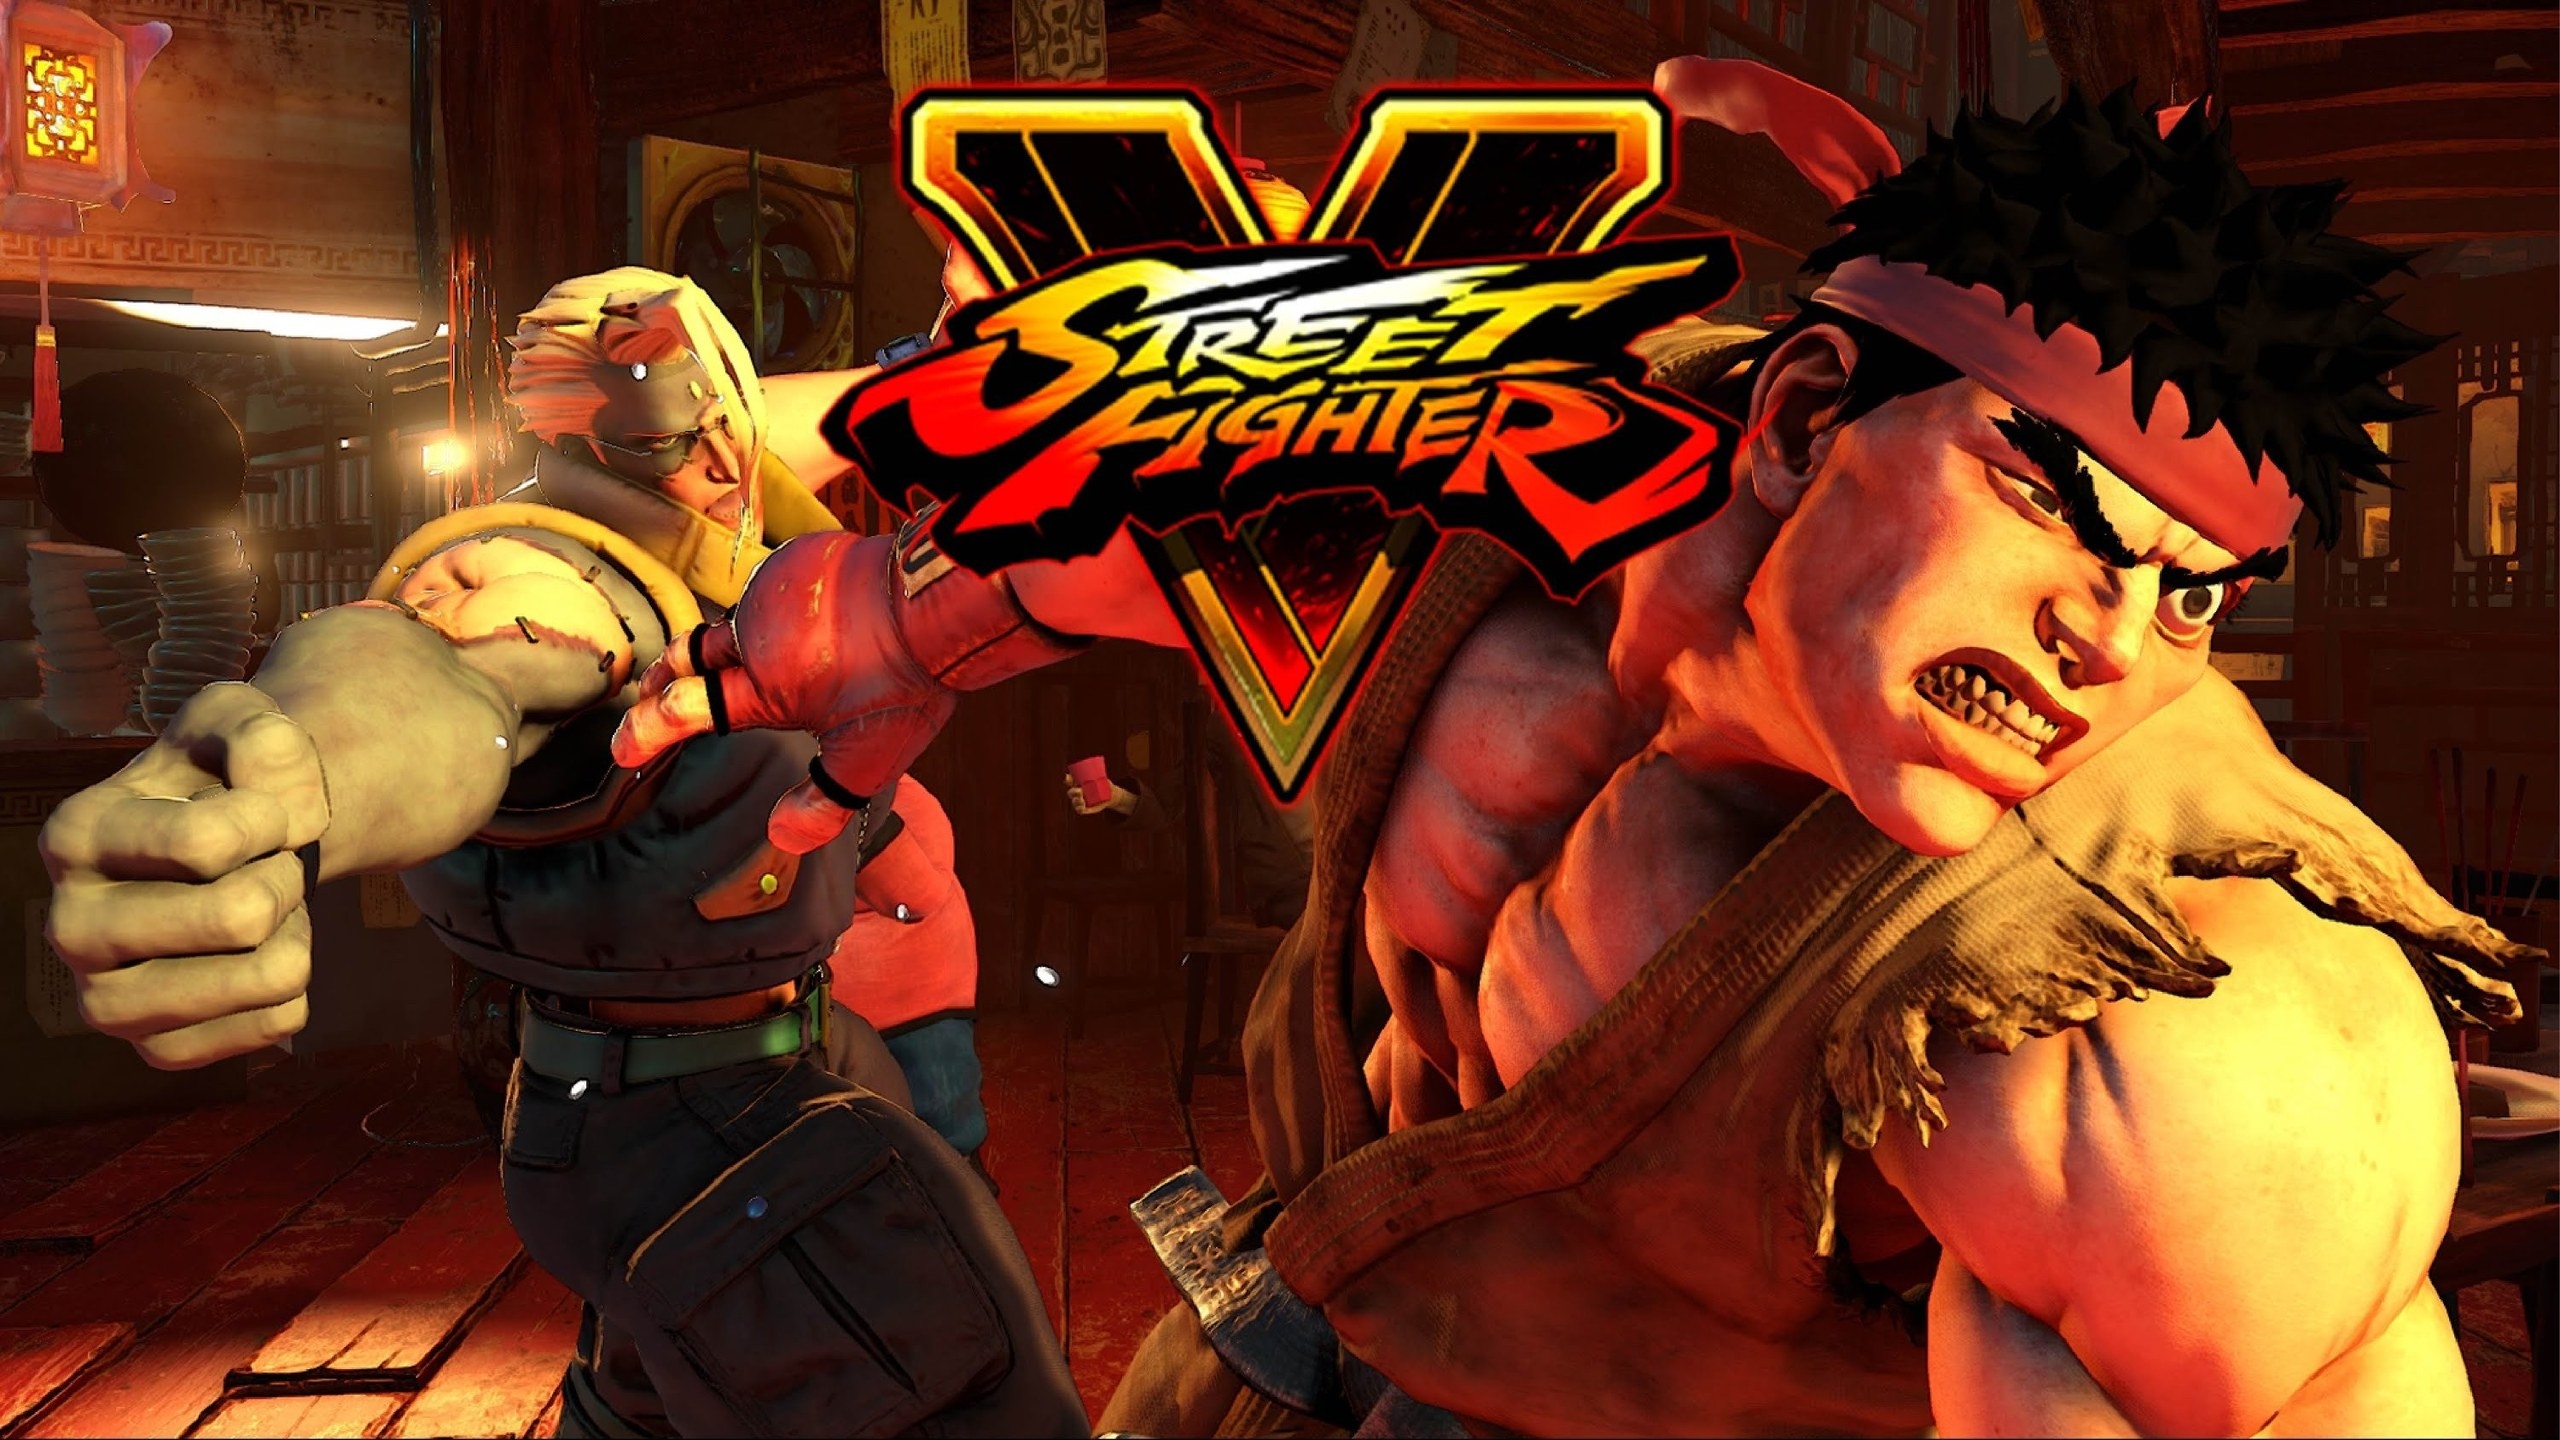 Street Fighter V Poster for 2560x1440 HDTV resolution